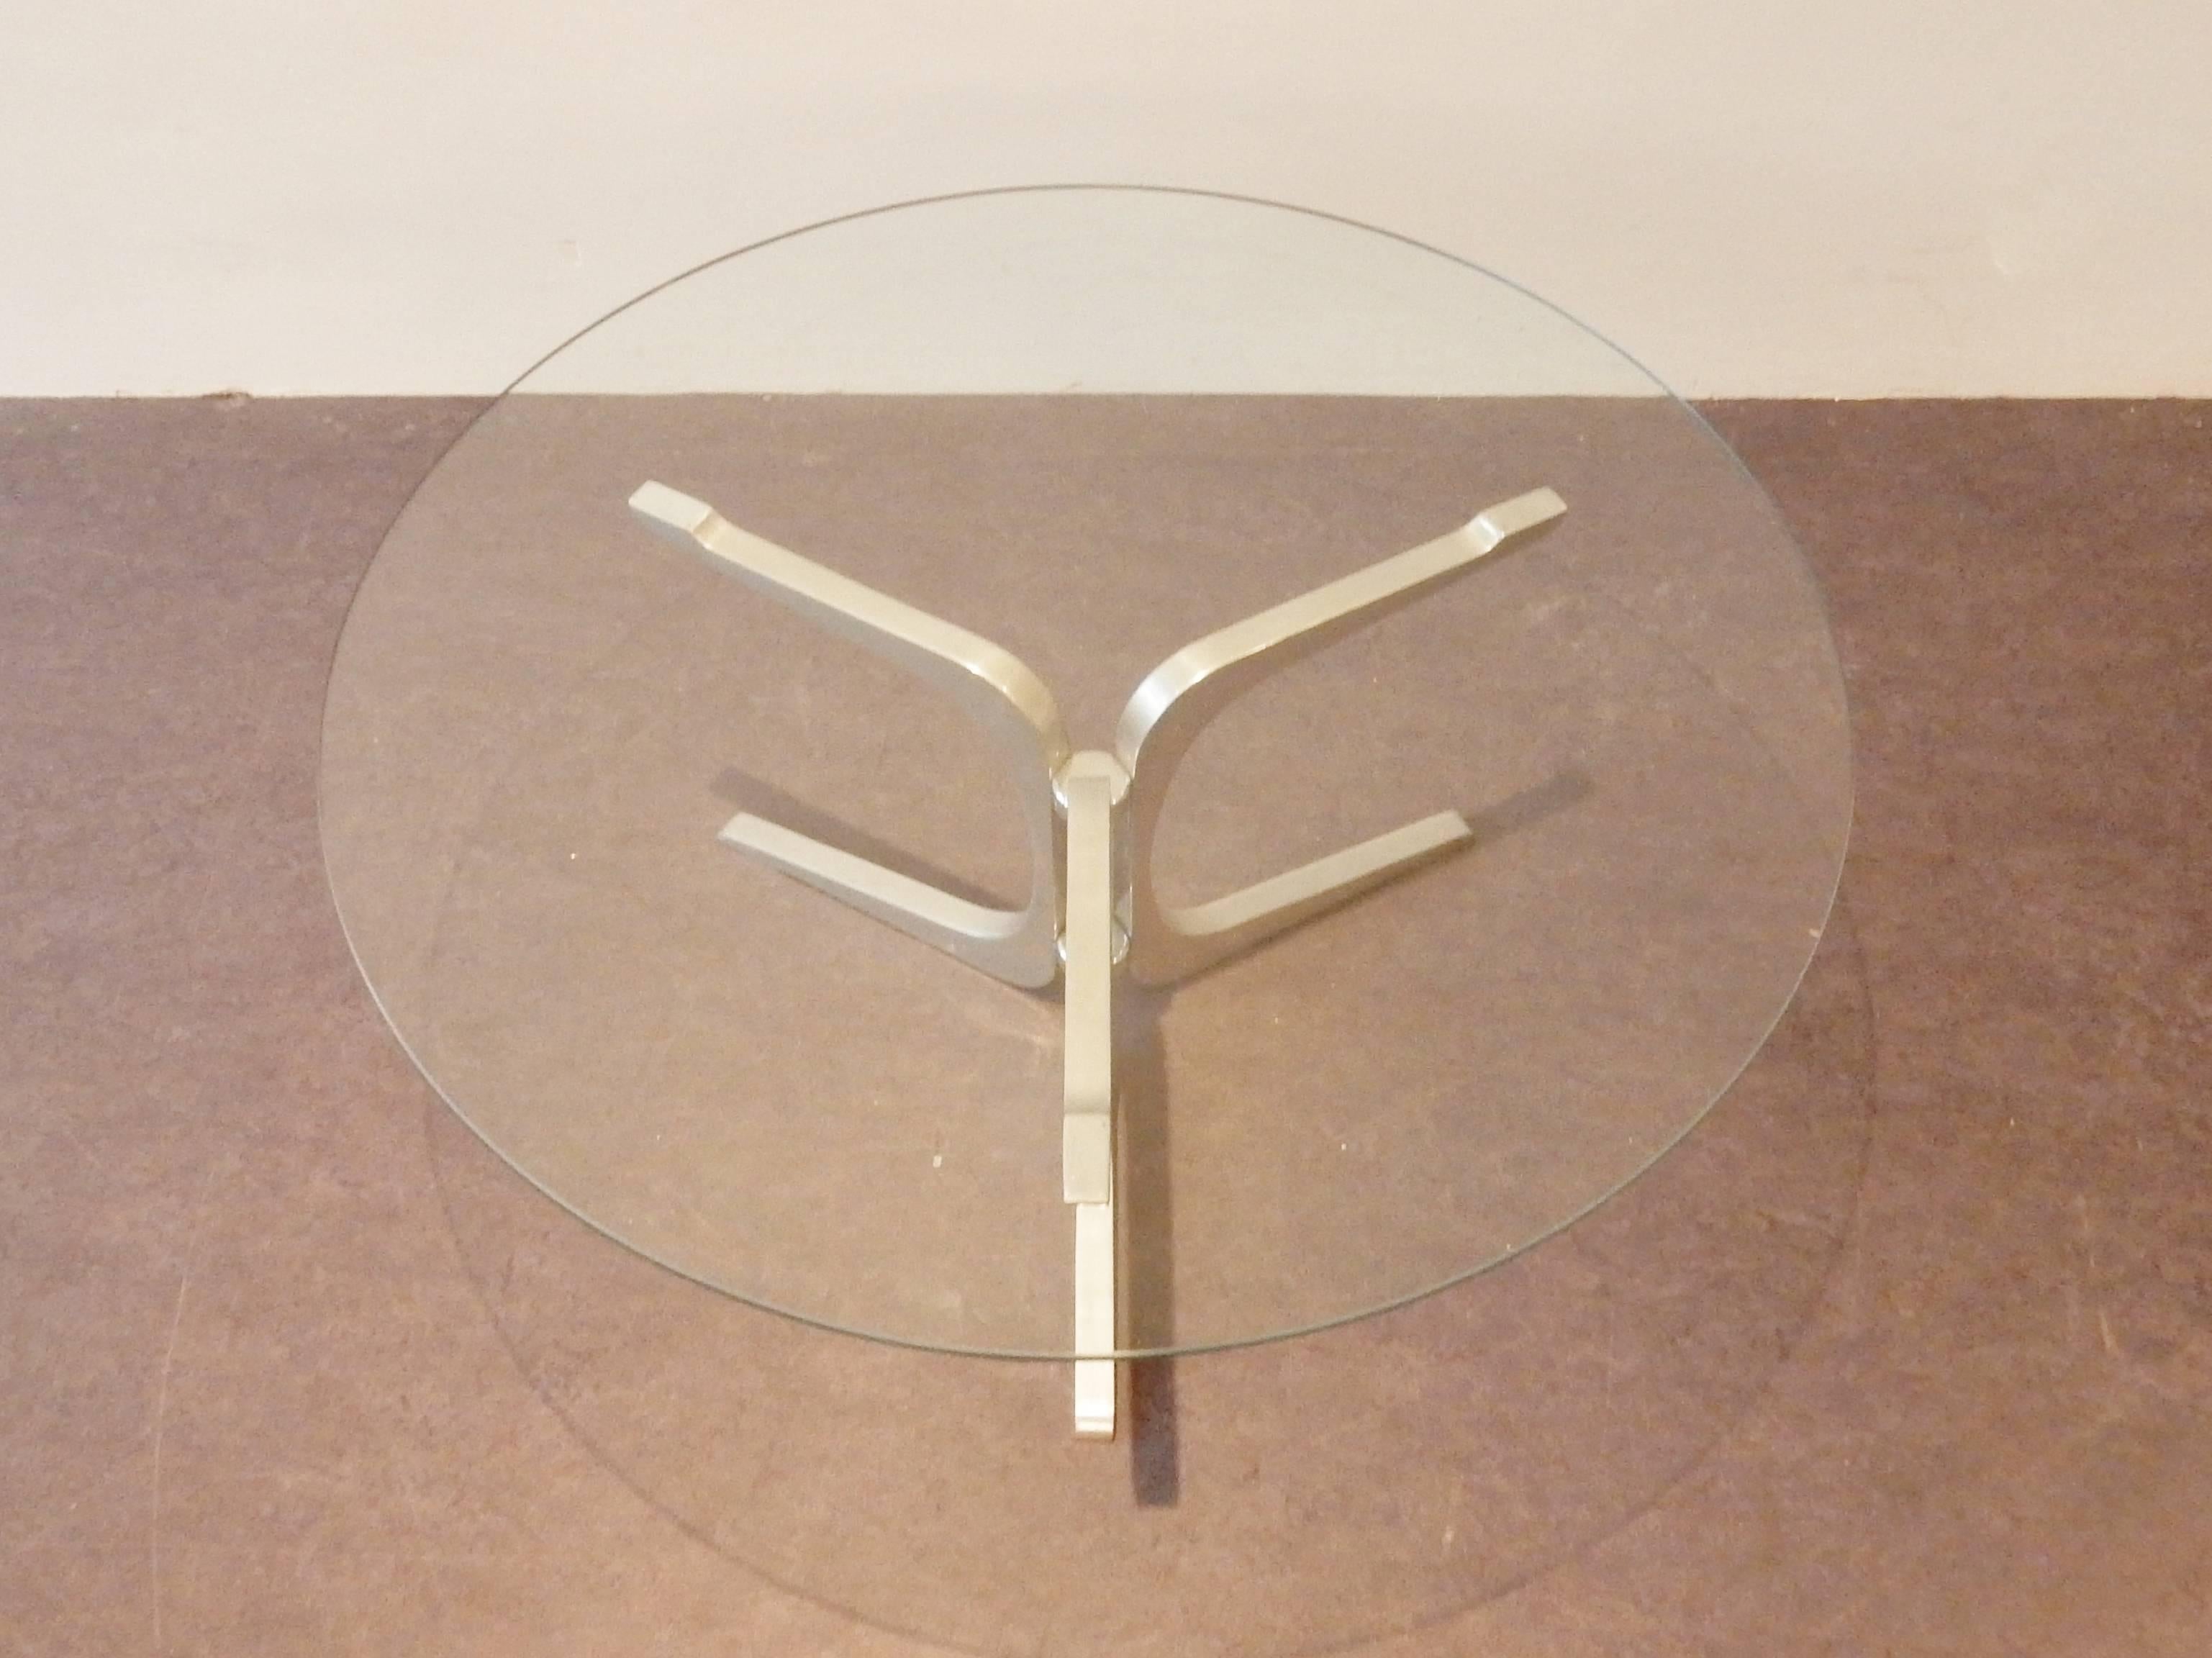 Trois pieds en aluminium moulé, maintenus par deux pièces en métal chromé, avec un plateau en verre. Tous en très bon état avec quelques signes d'âge et d'utilisation.
Cette table est d'origine inconnue, mais d'une grande qualité de matériaux.